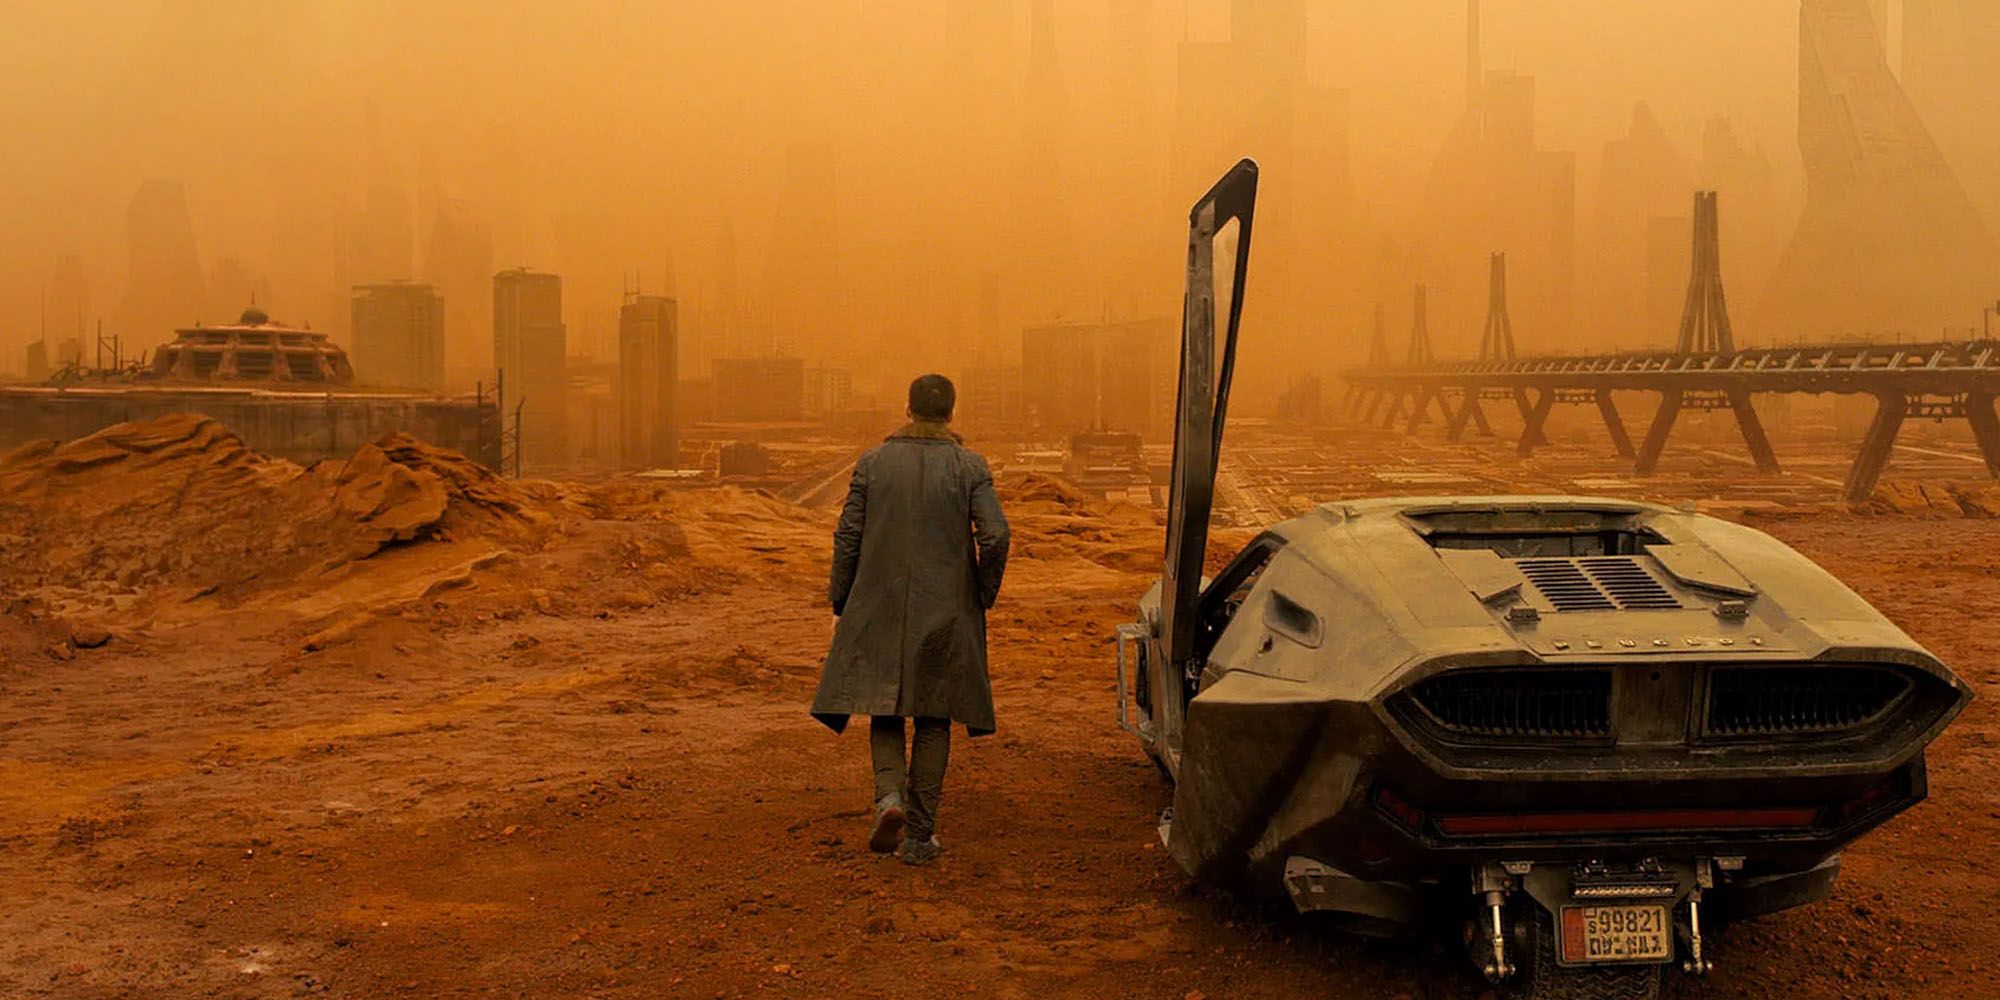 Scene from Blade Runner 2049